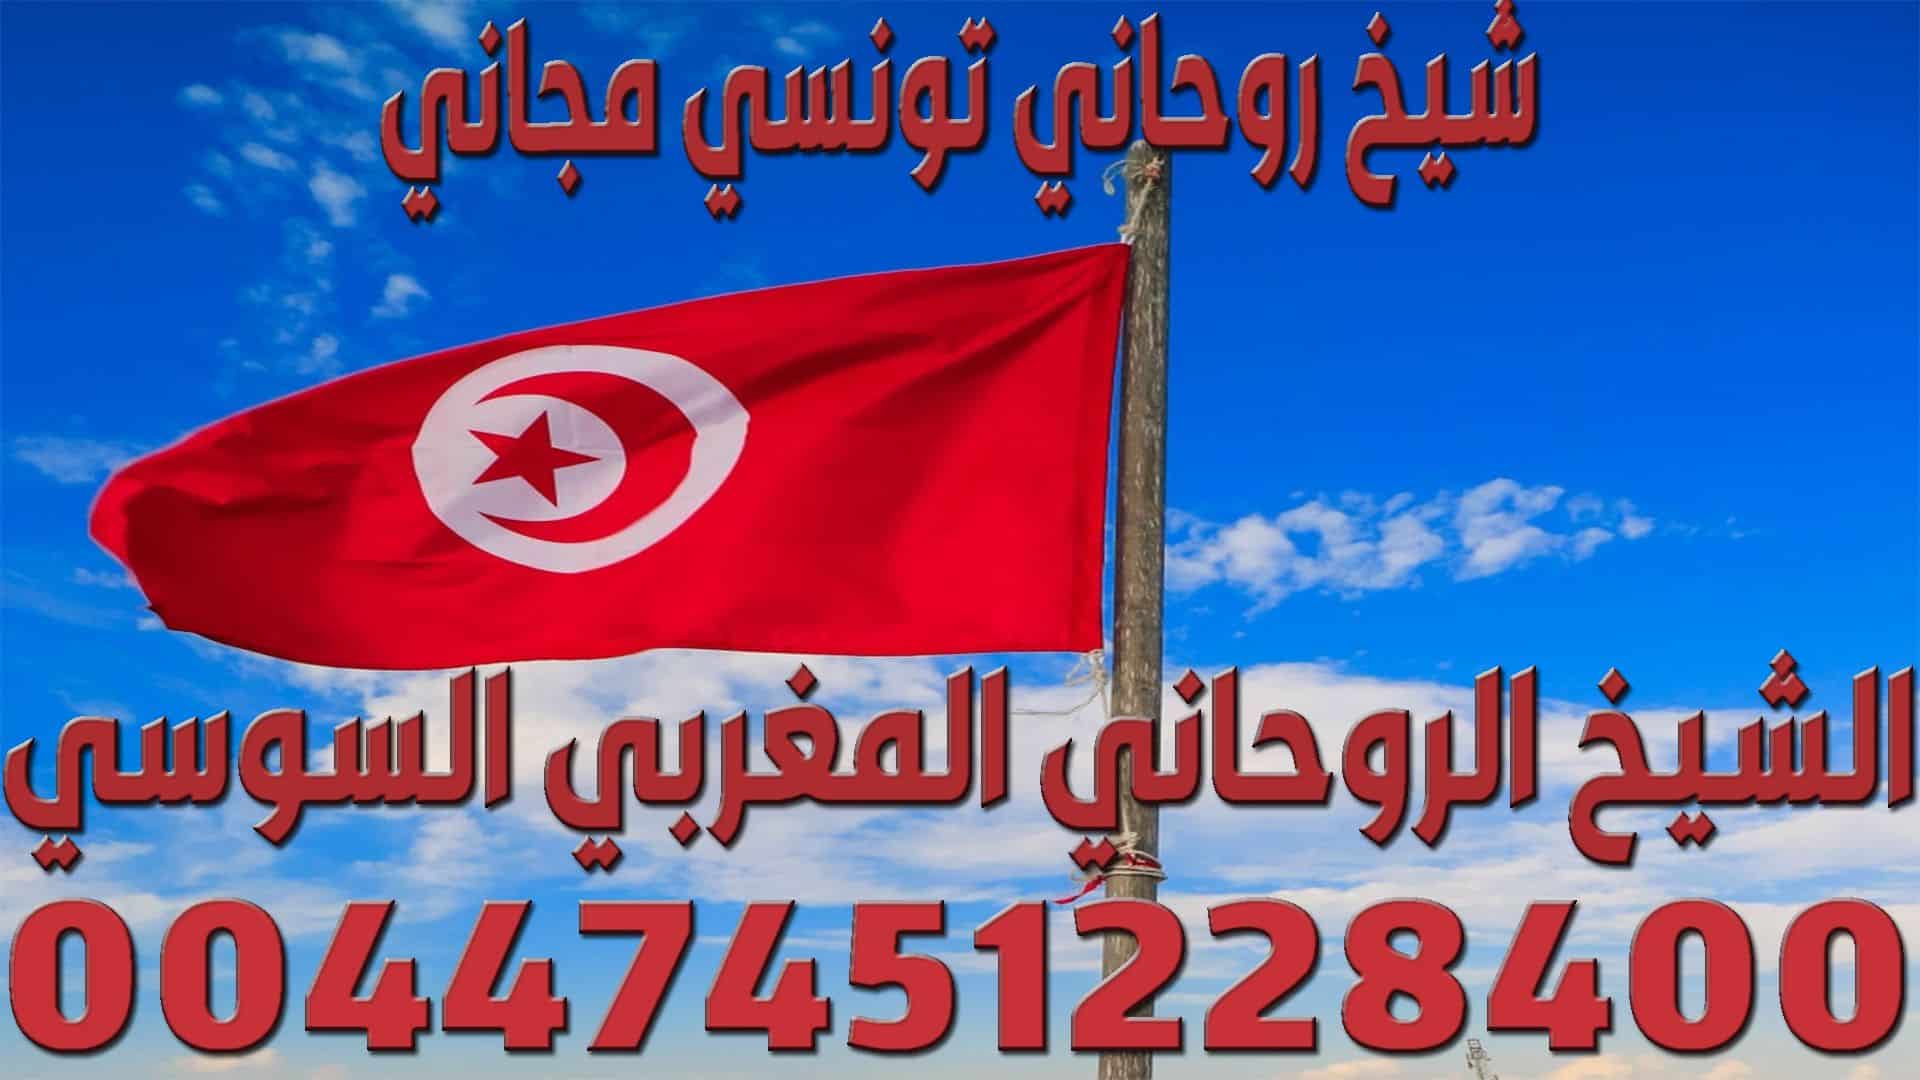 شيخ روحاني تونسي مجاني